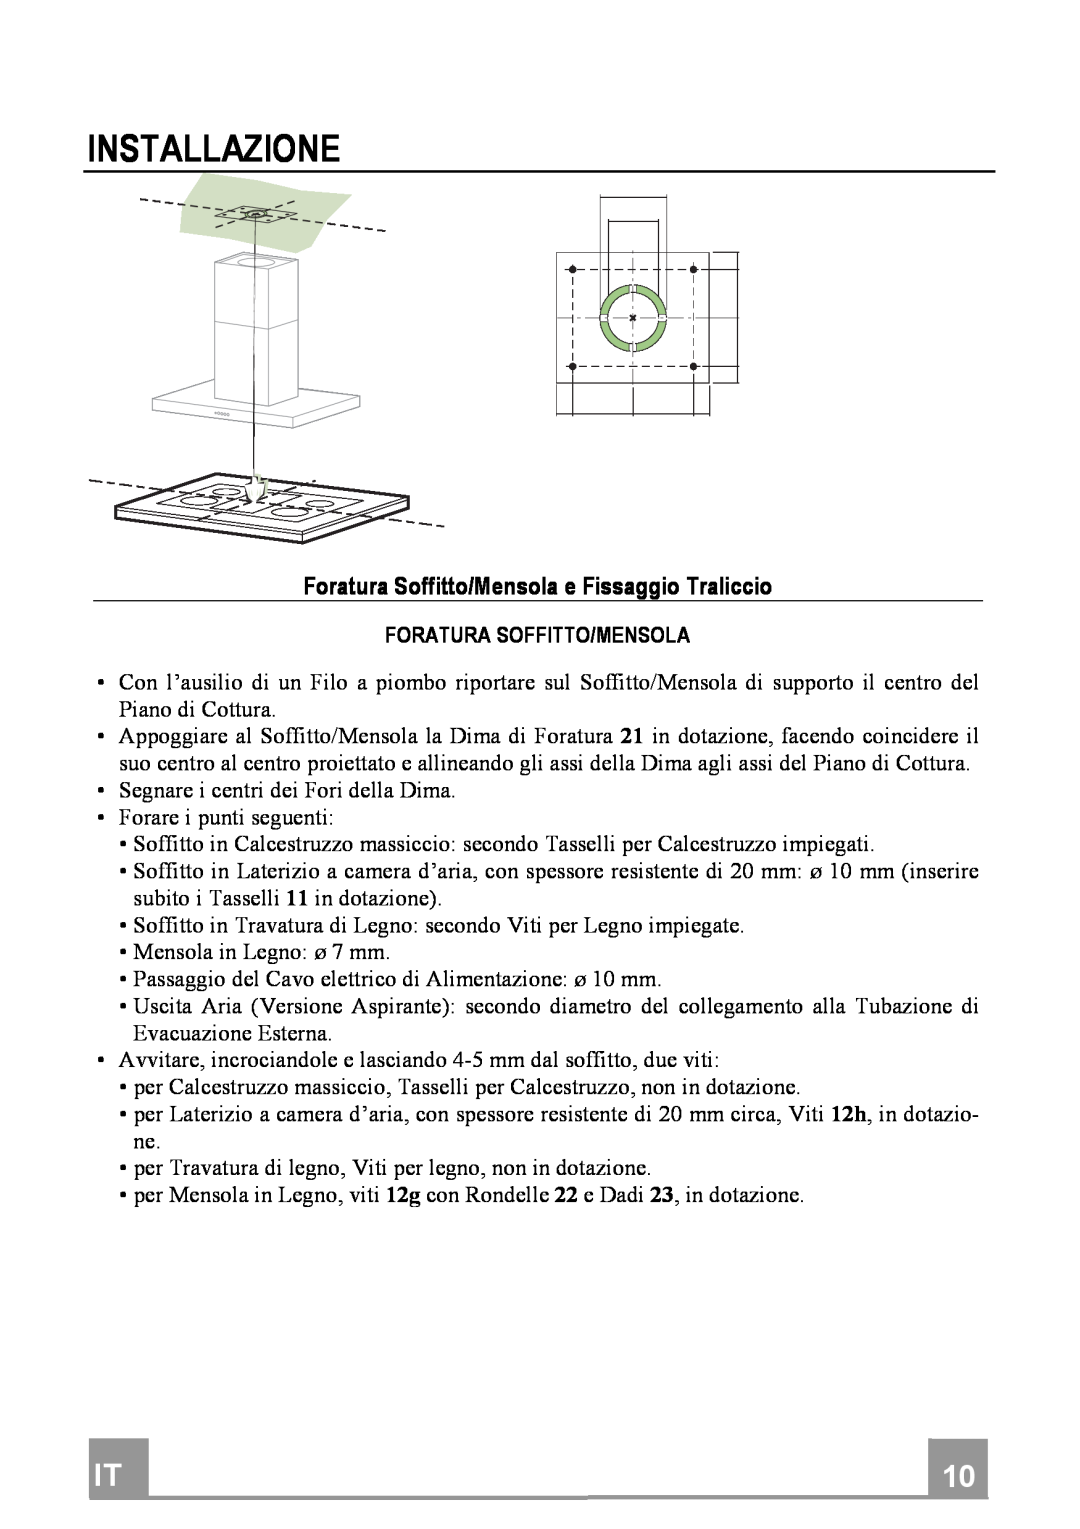 Franke Consumer Products FDF 9044 I manual Installazione, ForaturaSoffitto/MensolaeFissaggioTraliccio 